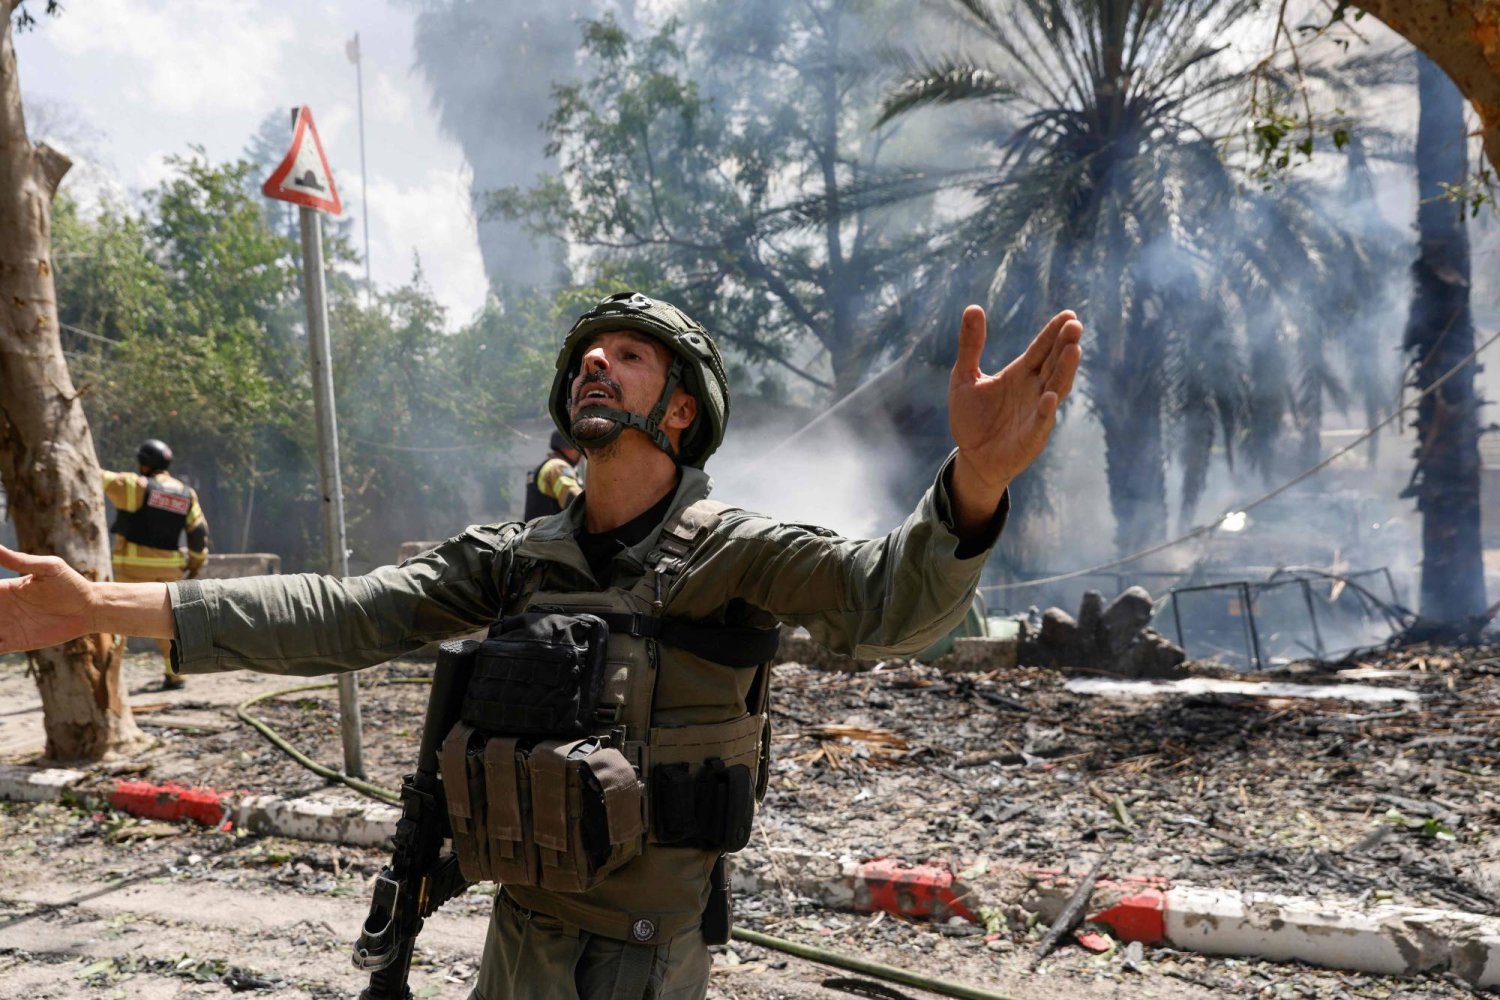 أفراد أمن إسرائيليون وعمال طوارئ ينتشرون في موقع بكريات شمونة تعرض لقصف من جنوب لبنان (أ.ف.ب)